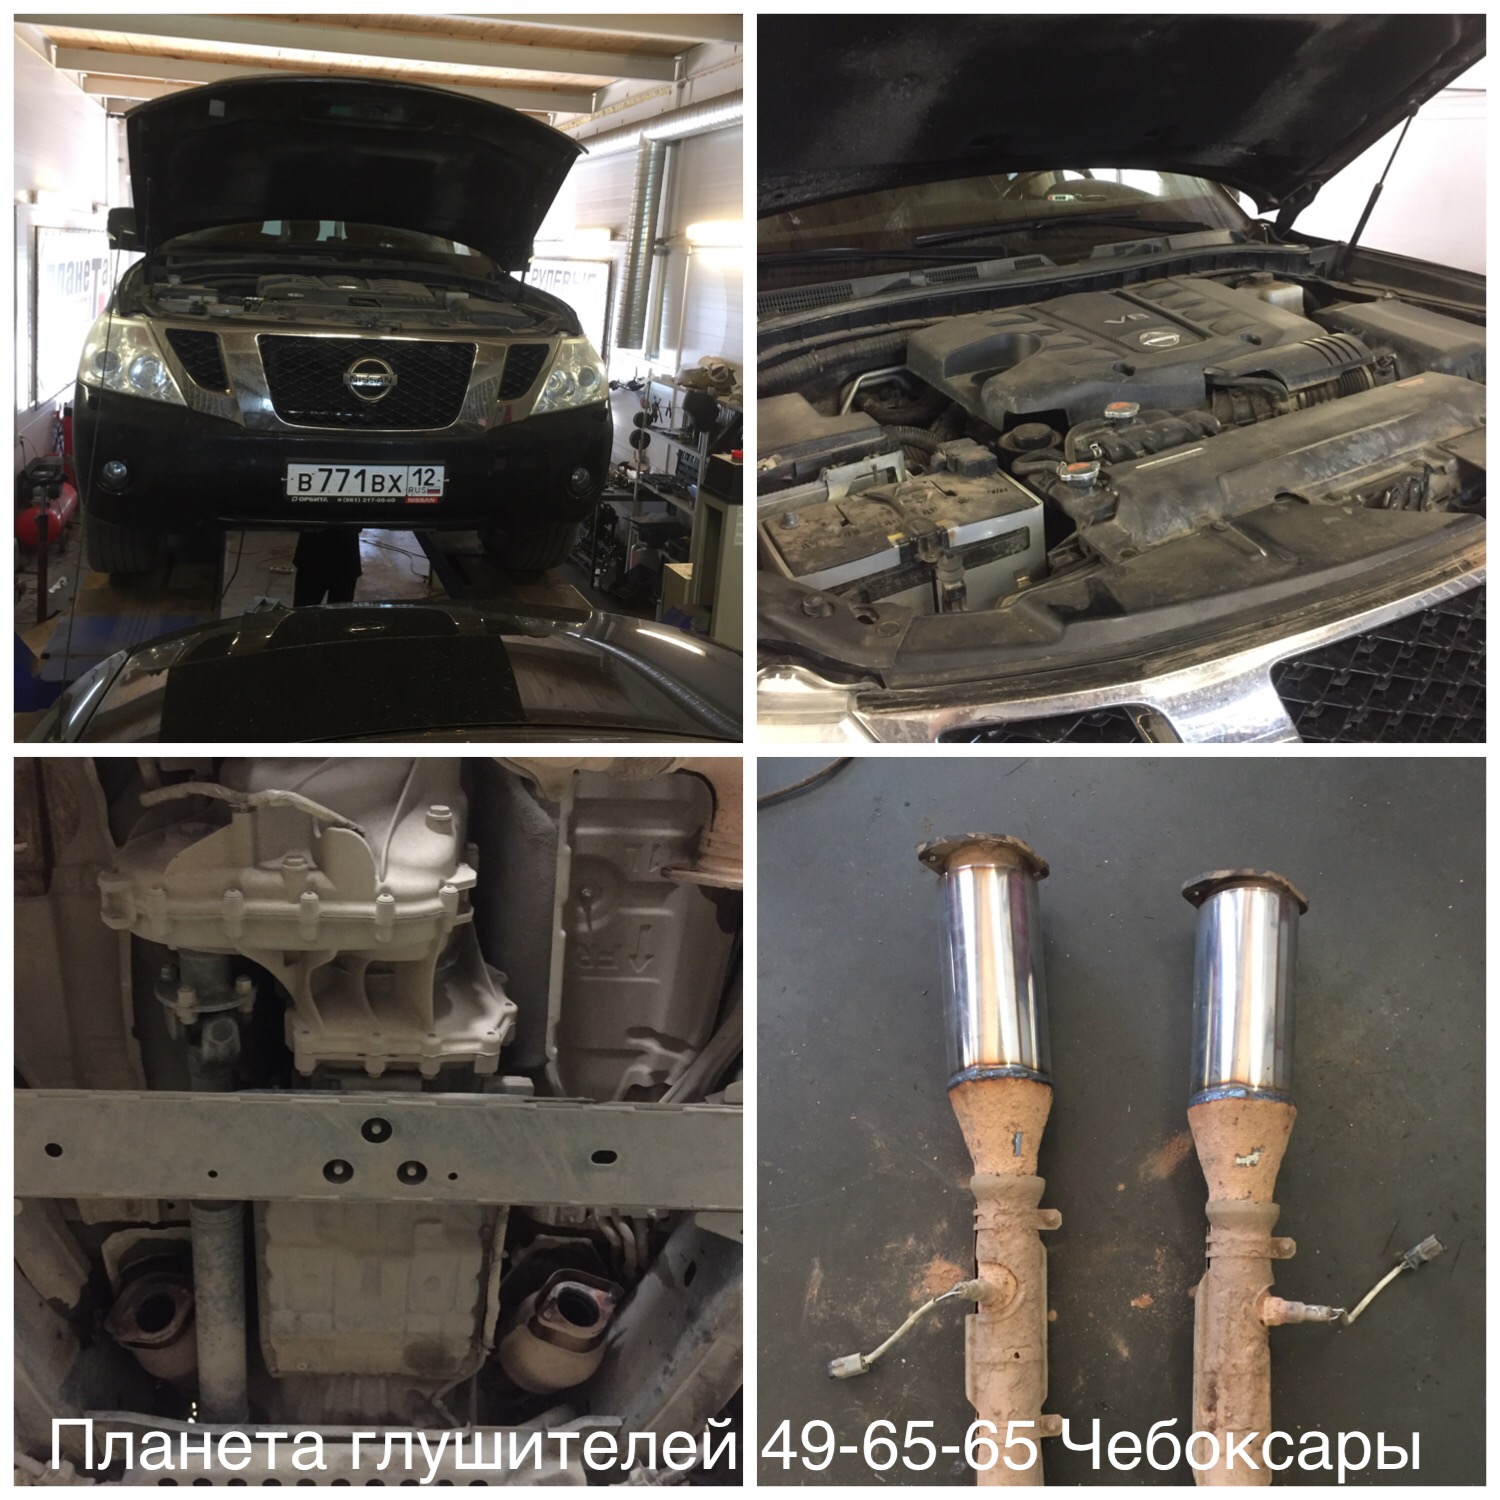 Nissan Patrol 5.6 удаление катализаторов 49-65-65 Чебоксары